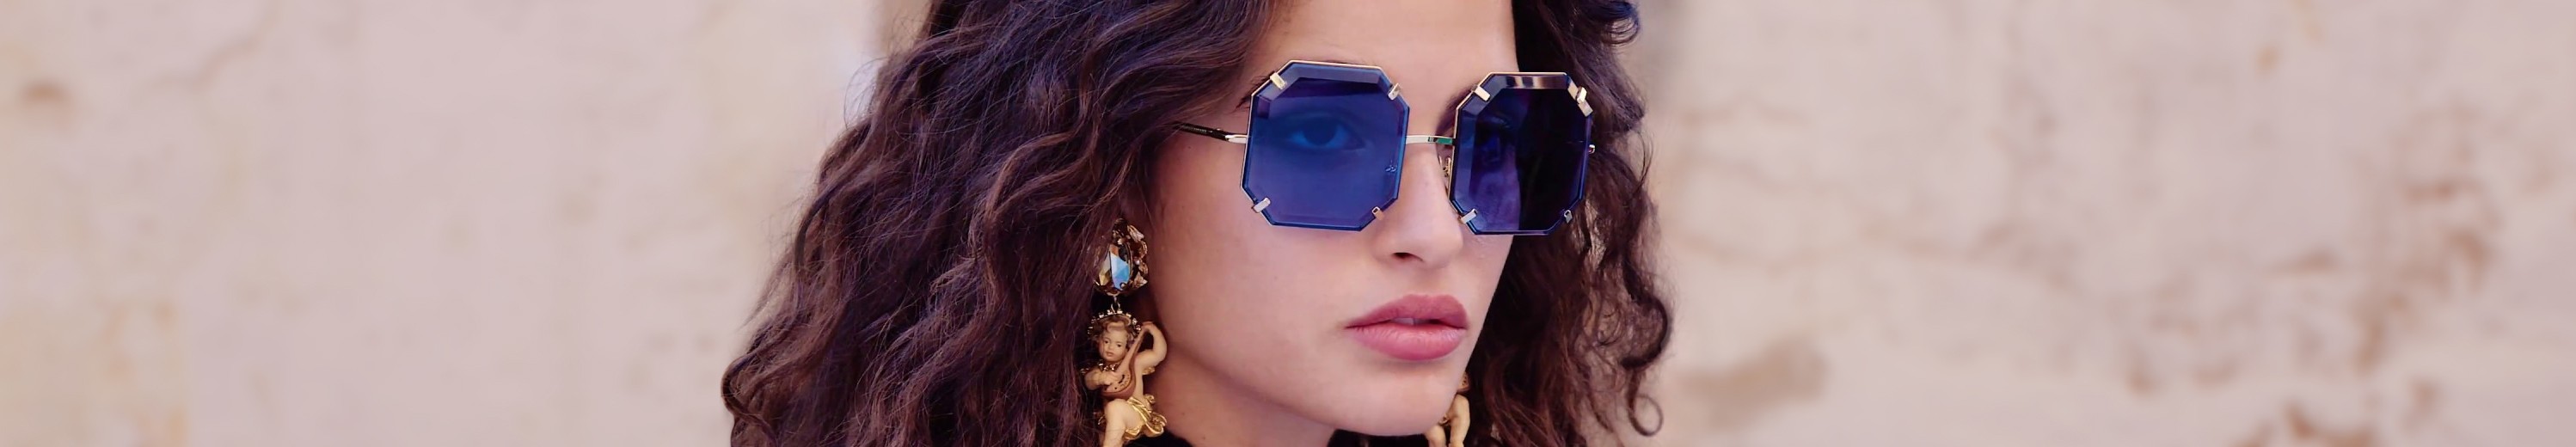 Geometric Sunglasses Frame for Women